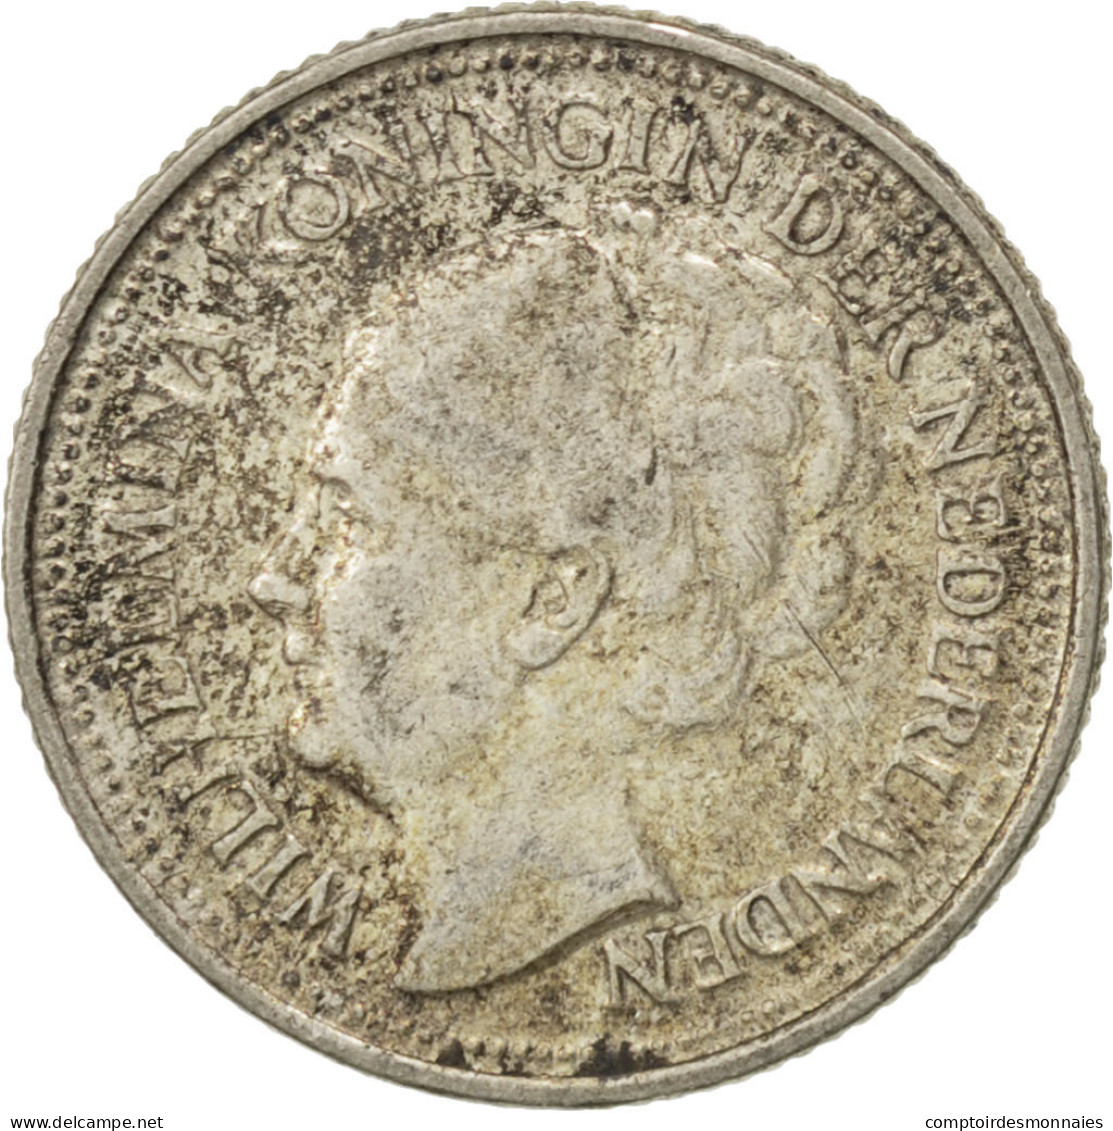 Monnaie, Pays-Bas, Wilhelmina I, 10 Cents, 1936, SUP, Argent, KM:163 - 10 Cent